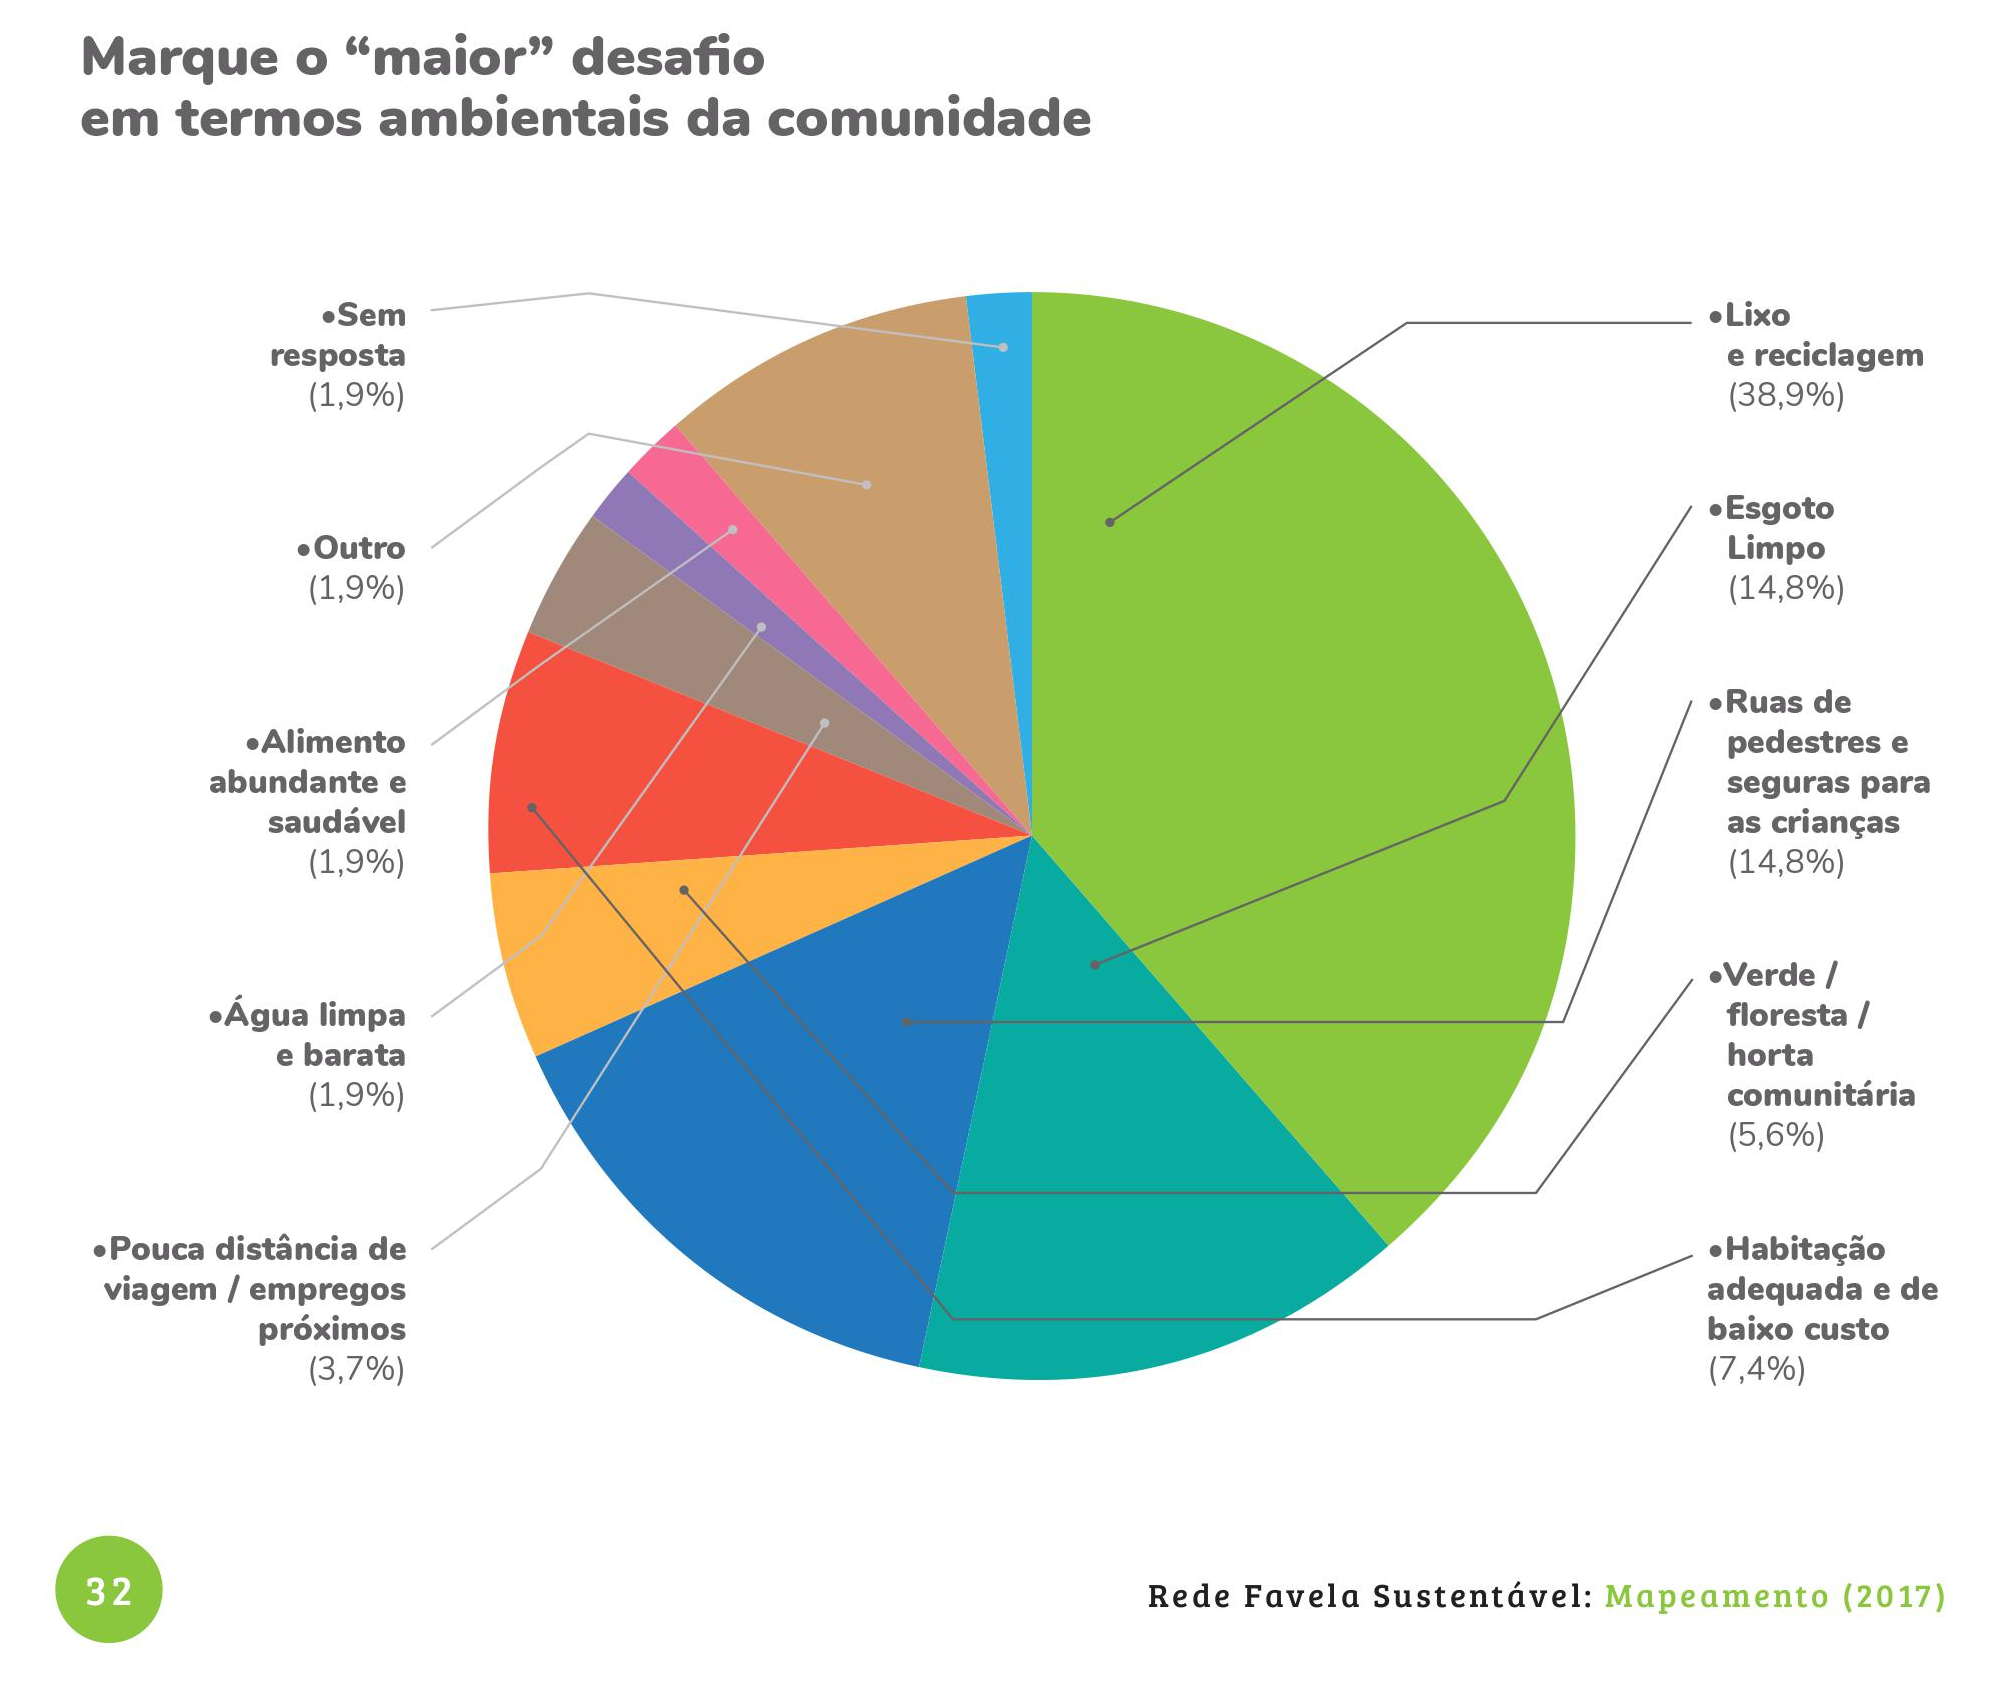 Gráfico do Rede Relatório Final do Mapeamento da Rede Favela Sustentável (2017)